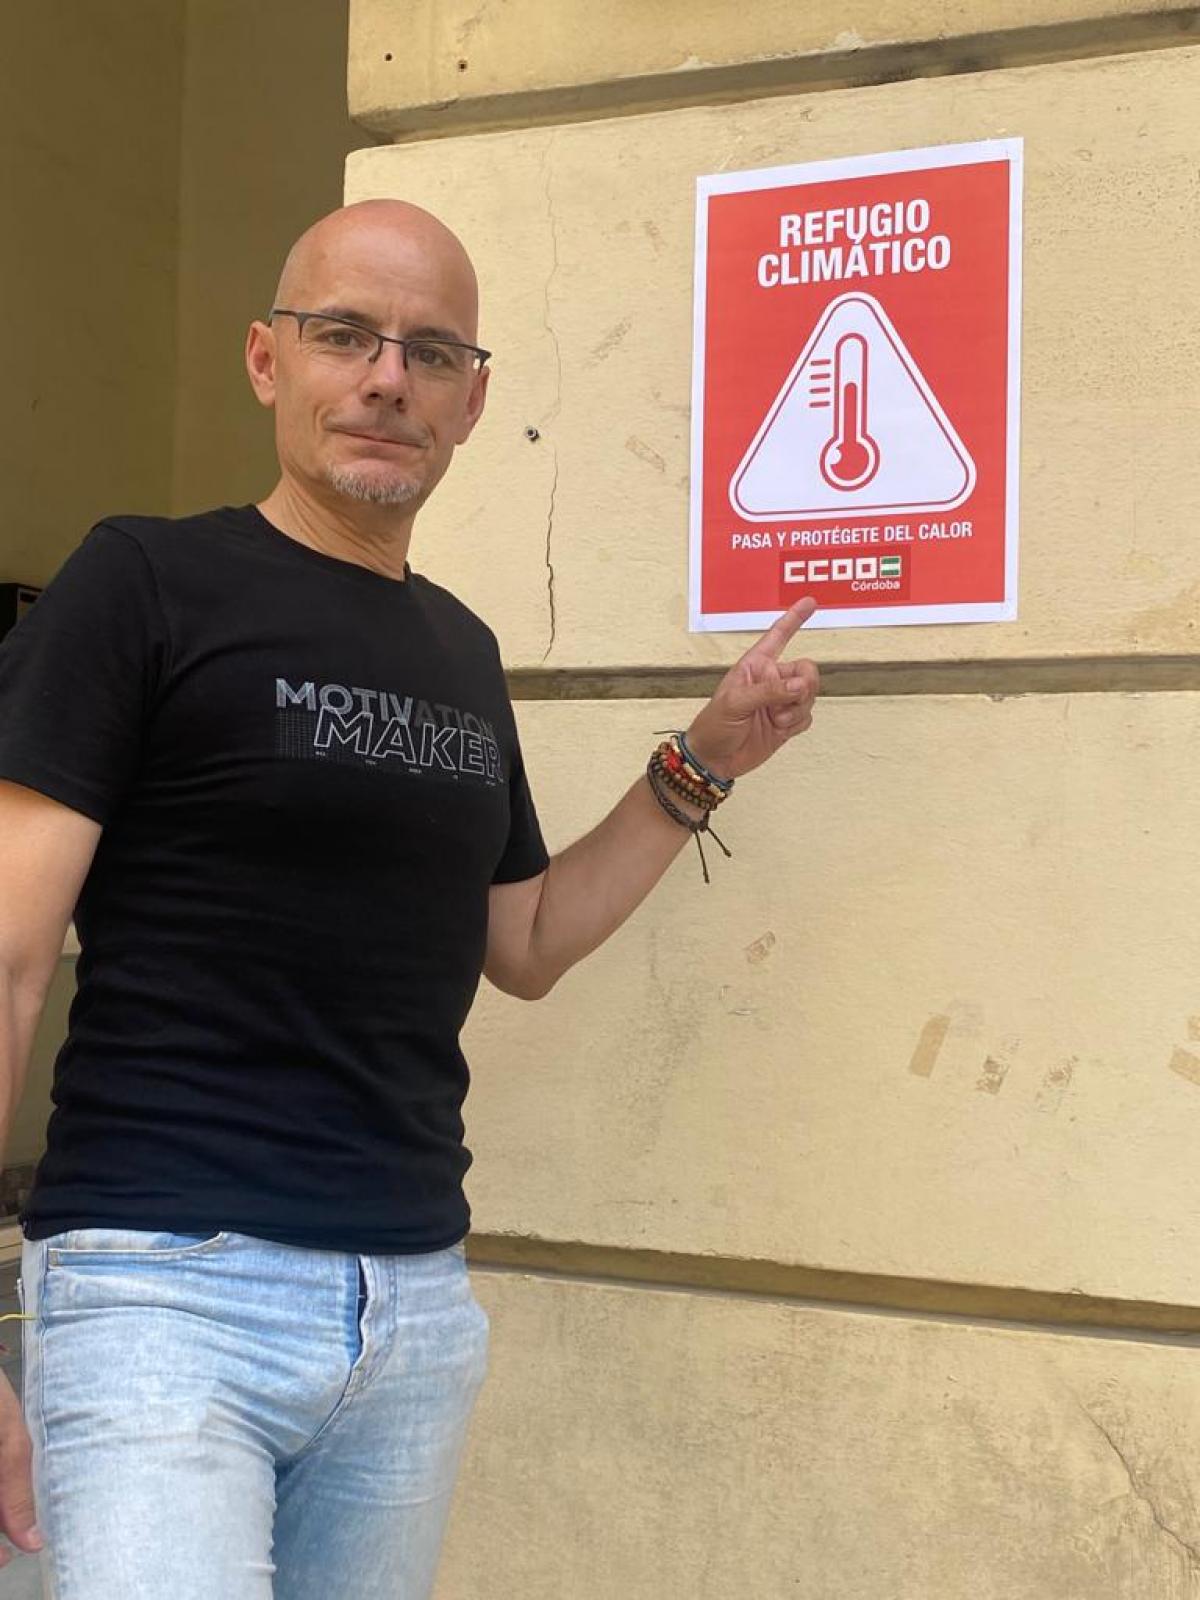 El secretario de Salud Laboral de CCOO de Crdoba, Aurelio Martn, junto al cartel que anuncia que la sede de CCOO de Crdoba es refugio climtico.